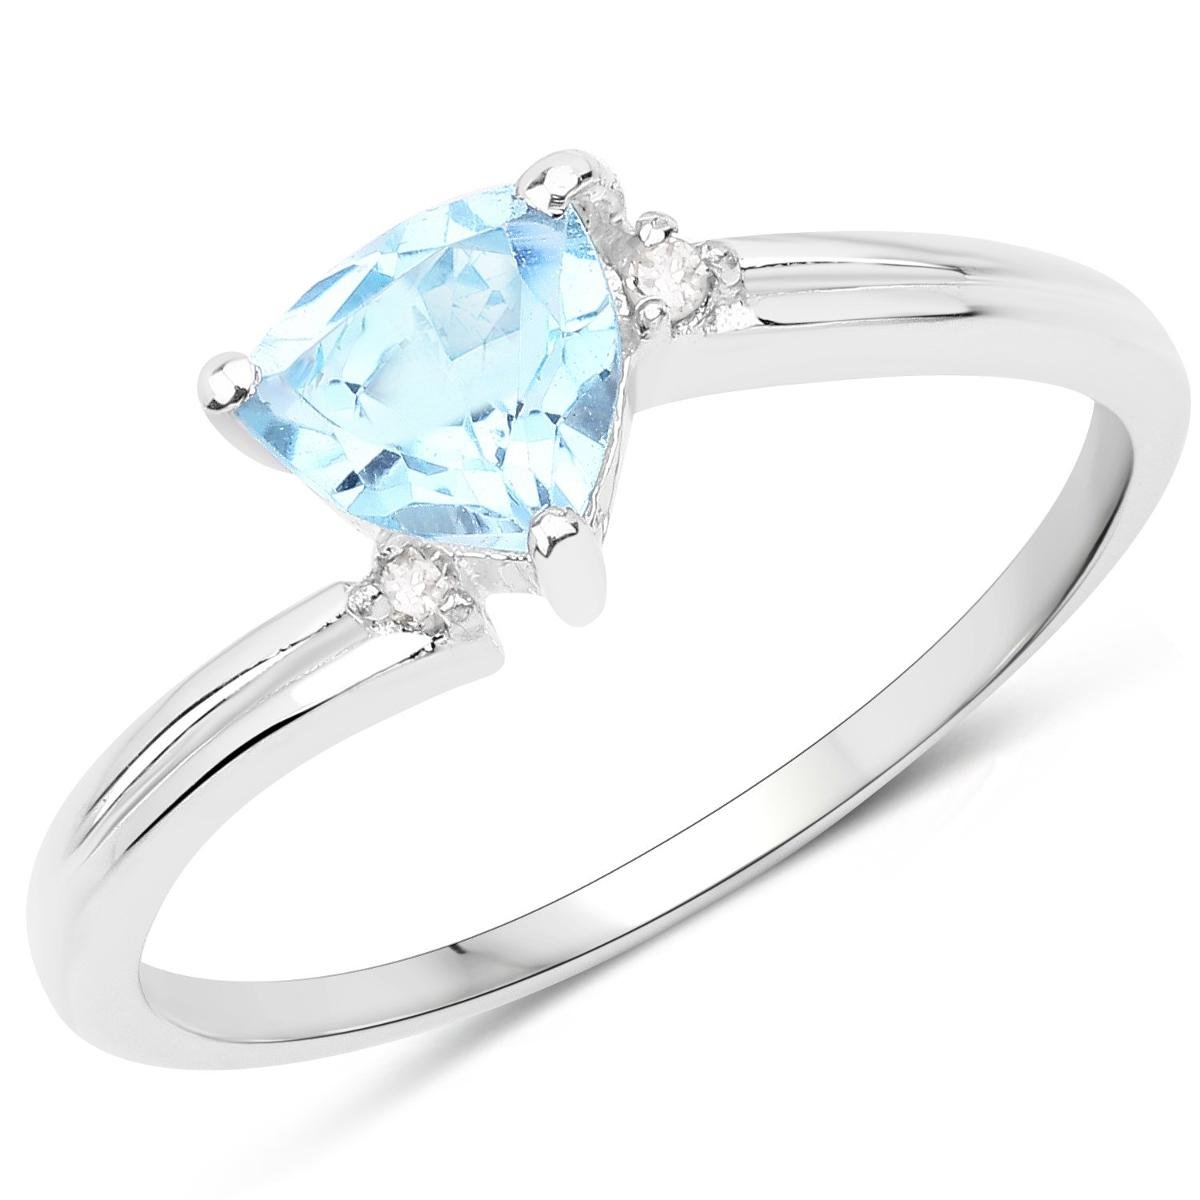 Zdjęcia - Pierścionek Biżuteria Prana,  srebrny z topazem niebieskim i diamentami, ro